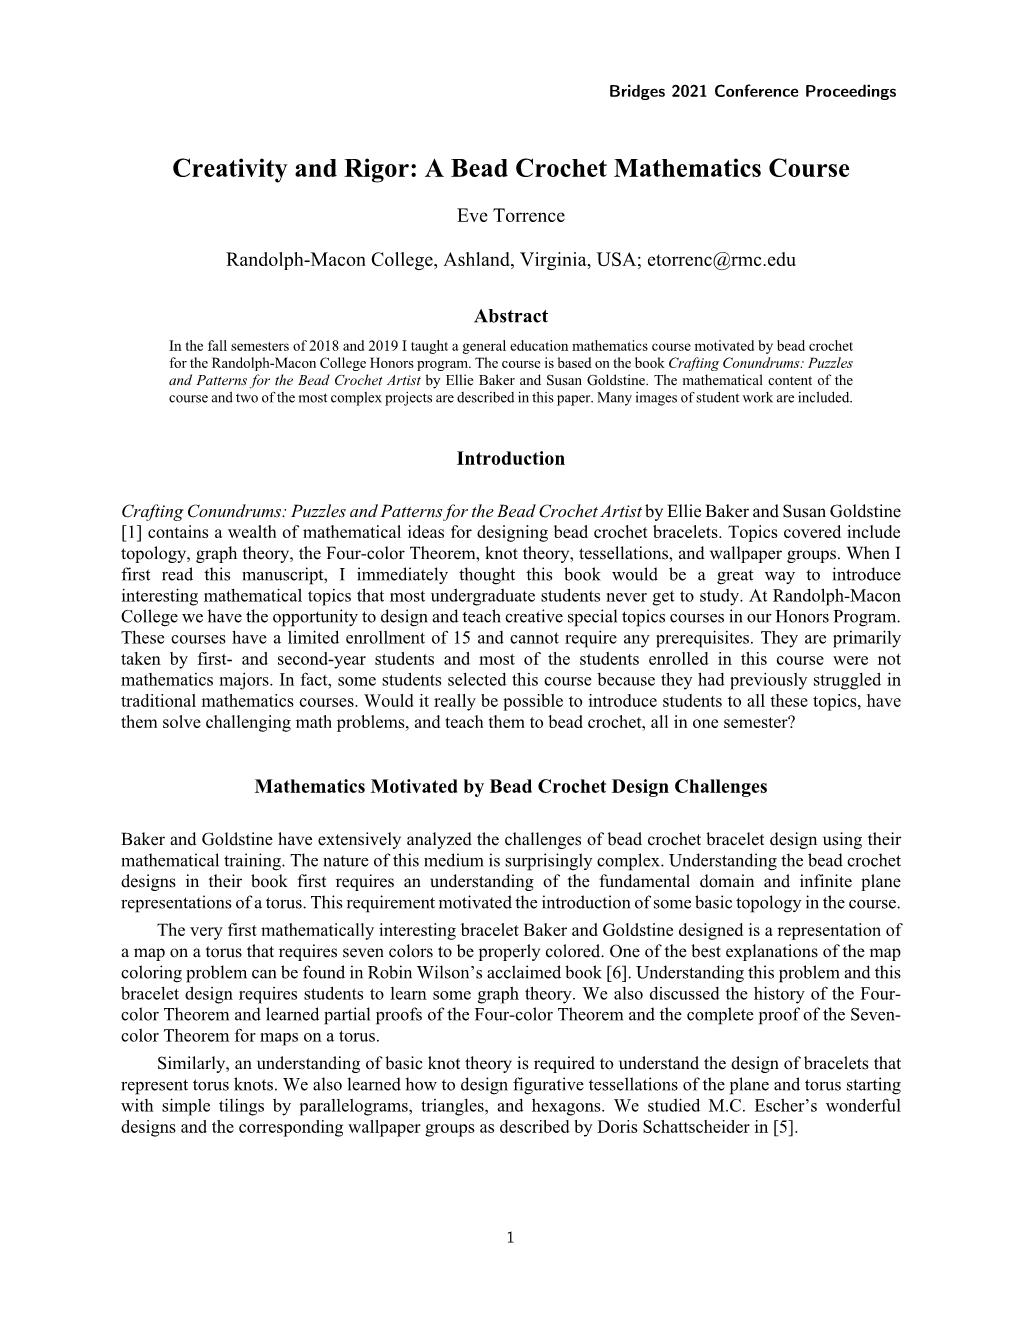 Creativity and Rigor: a Bead Crochet Mathematics Course